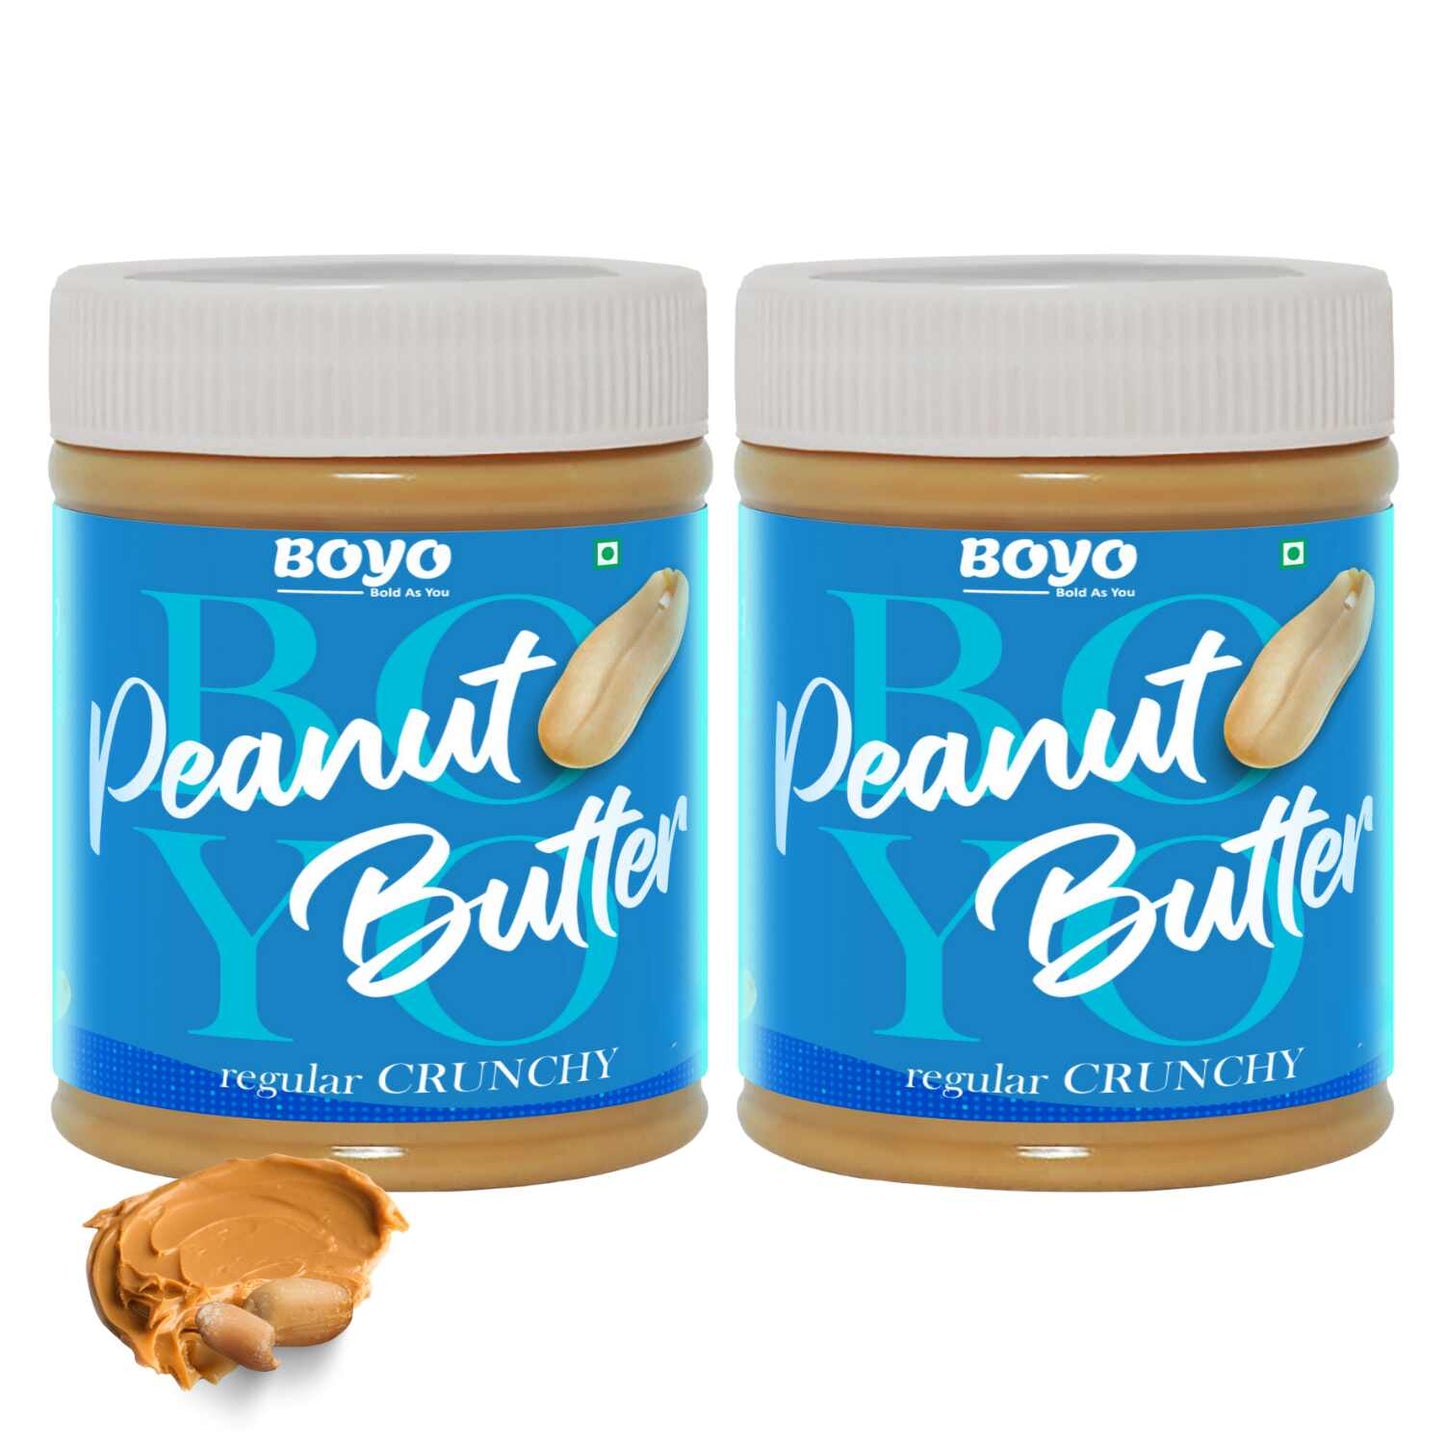 Peanut Butter Combo Regular Crunchy 510g Each - Pack of 2